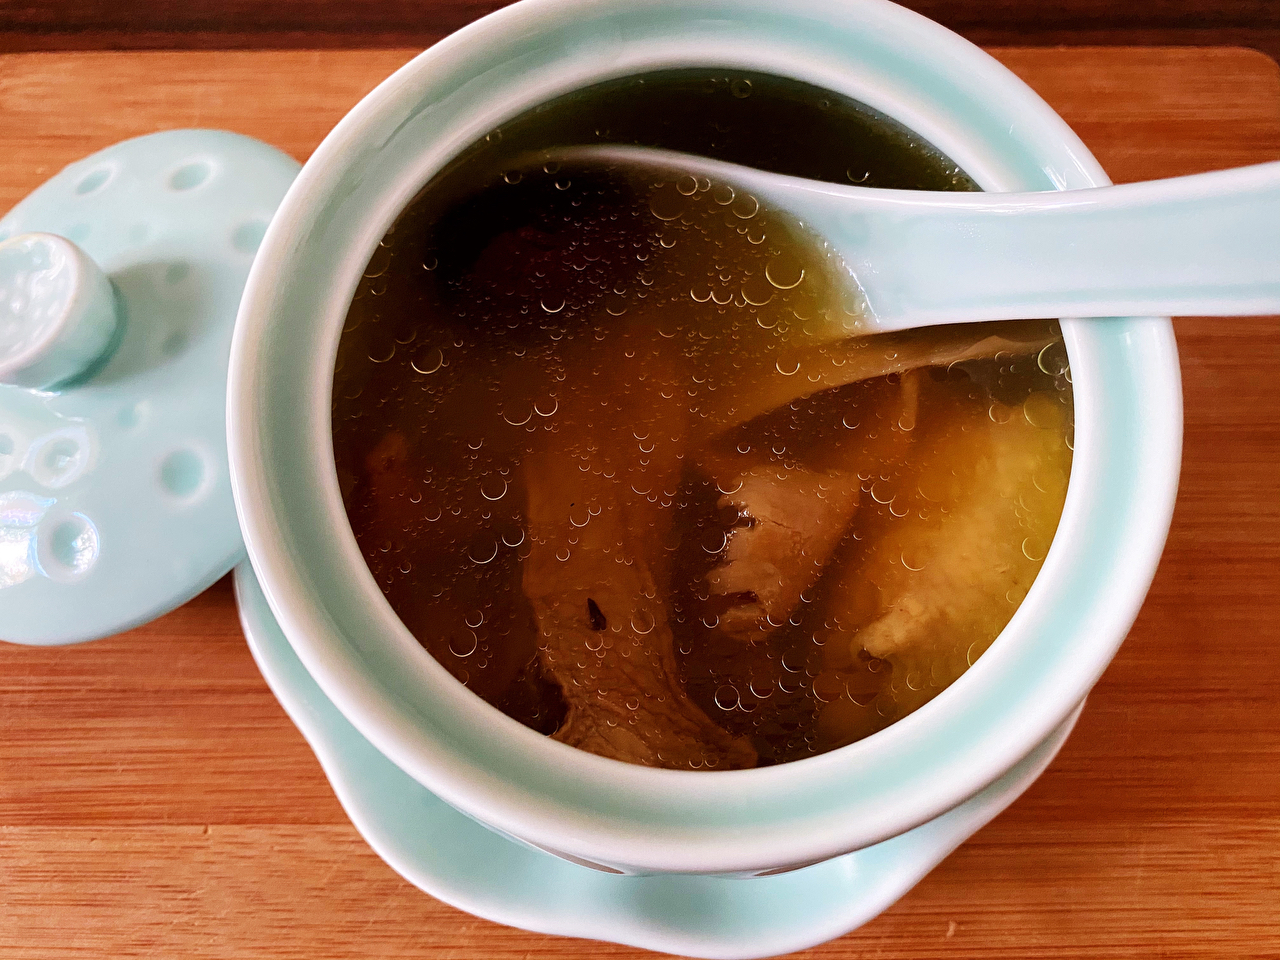 姬松茸竹荪菌菇鸡汤